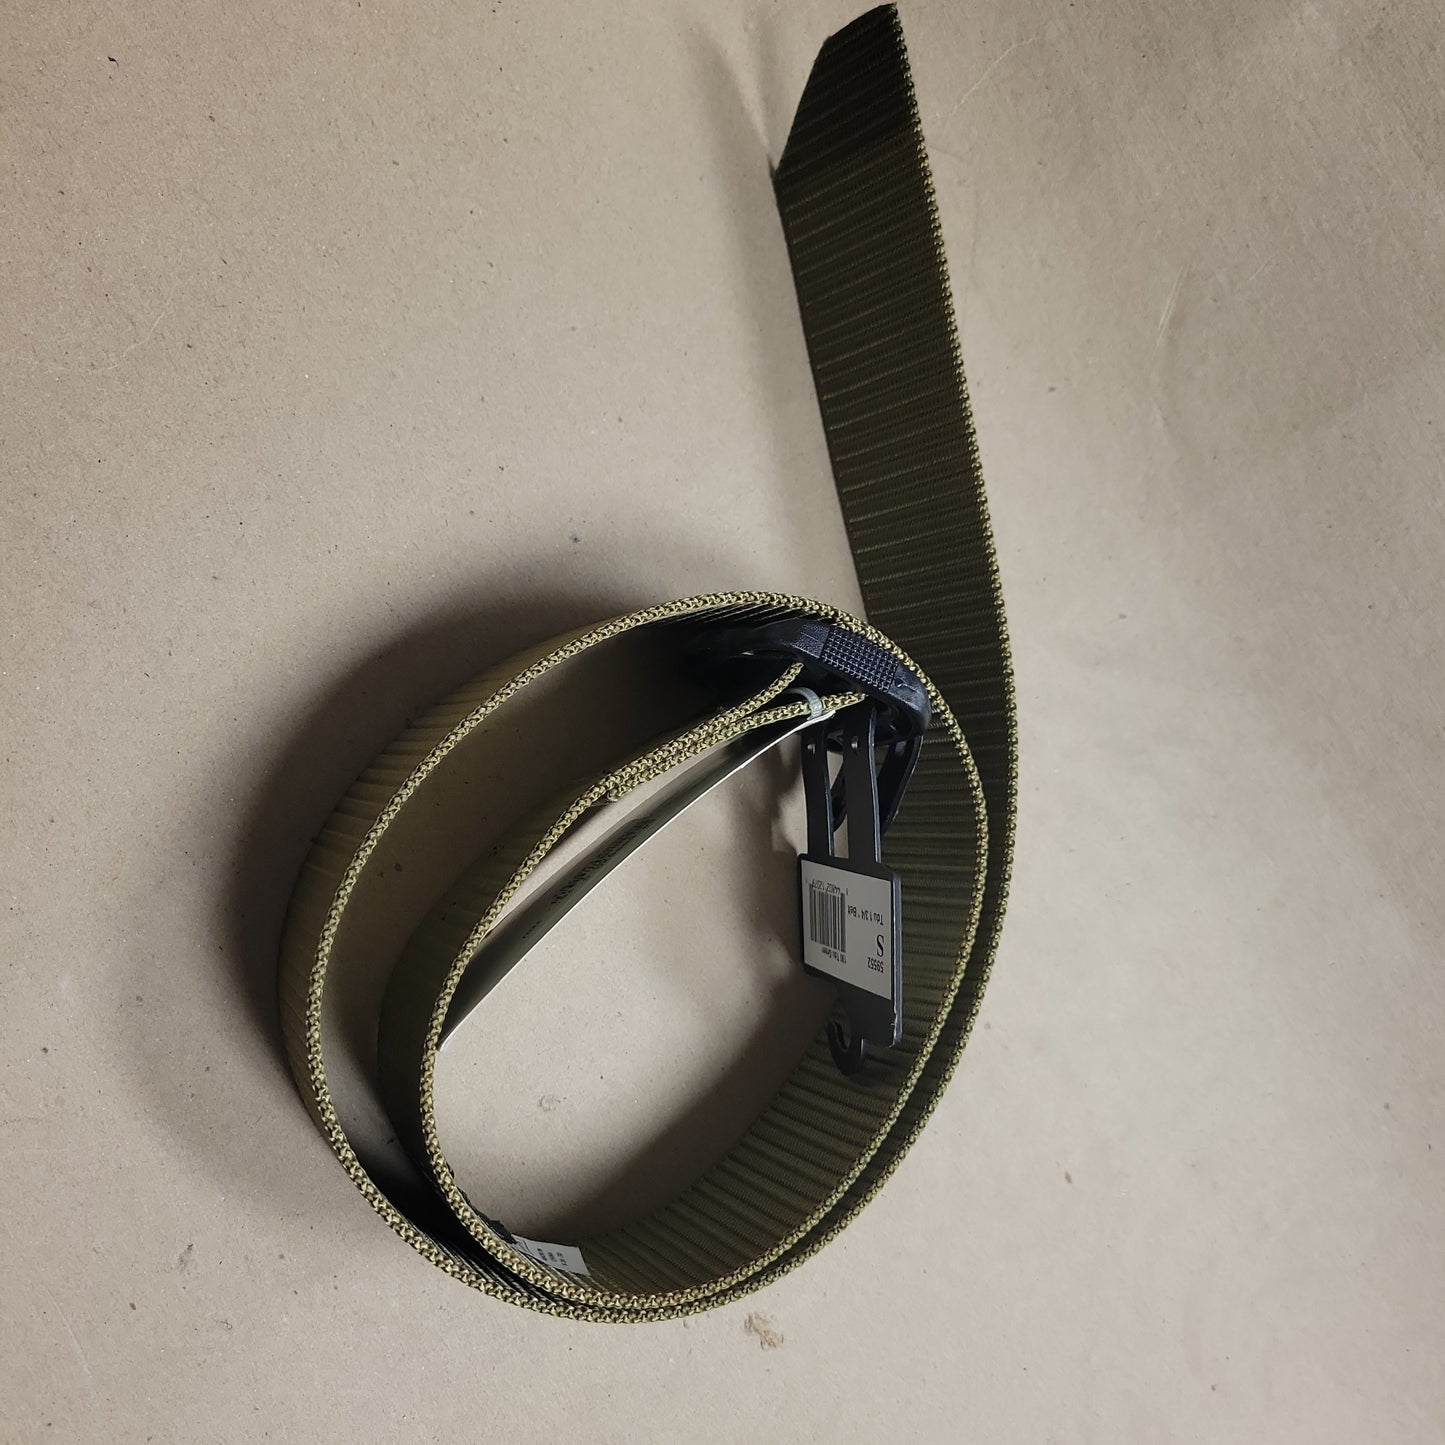 5.11 TDU Belt 1.75", TDU Green, Small (28-30) 59552-190-S